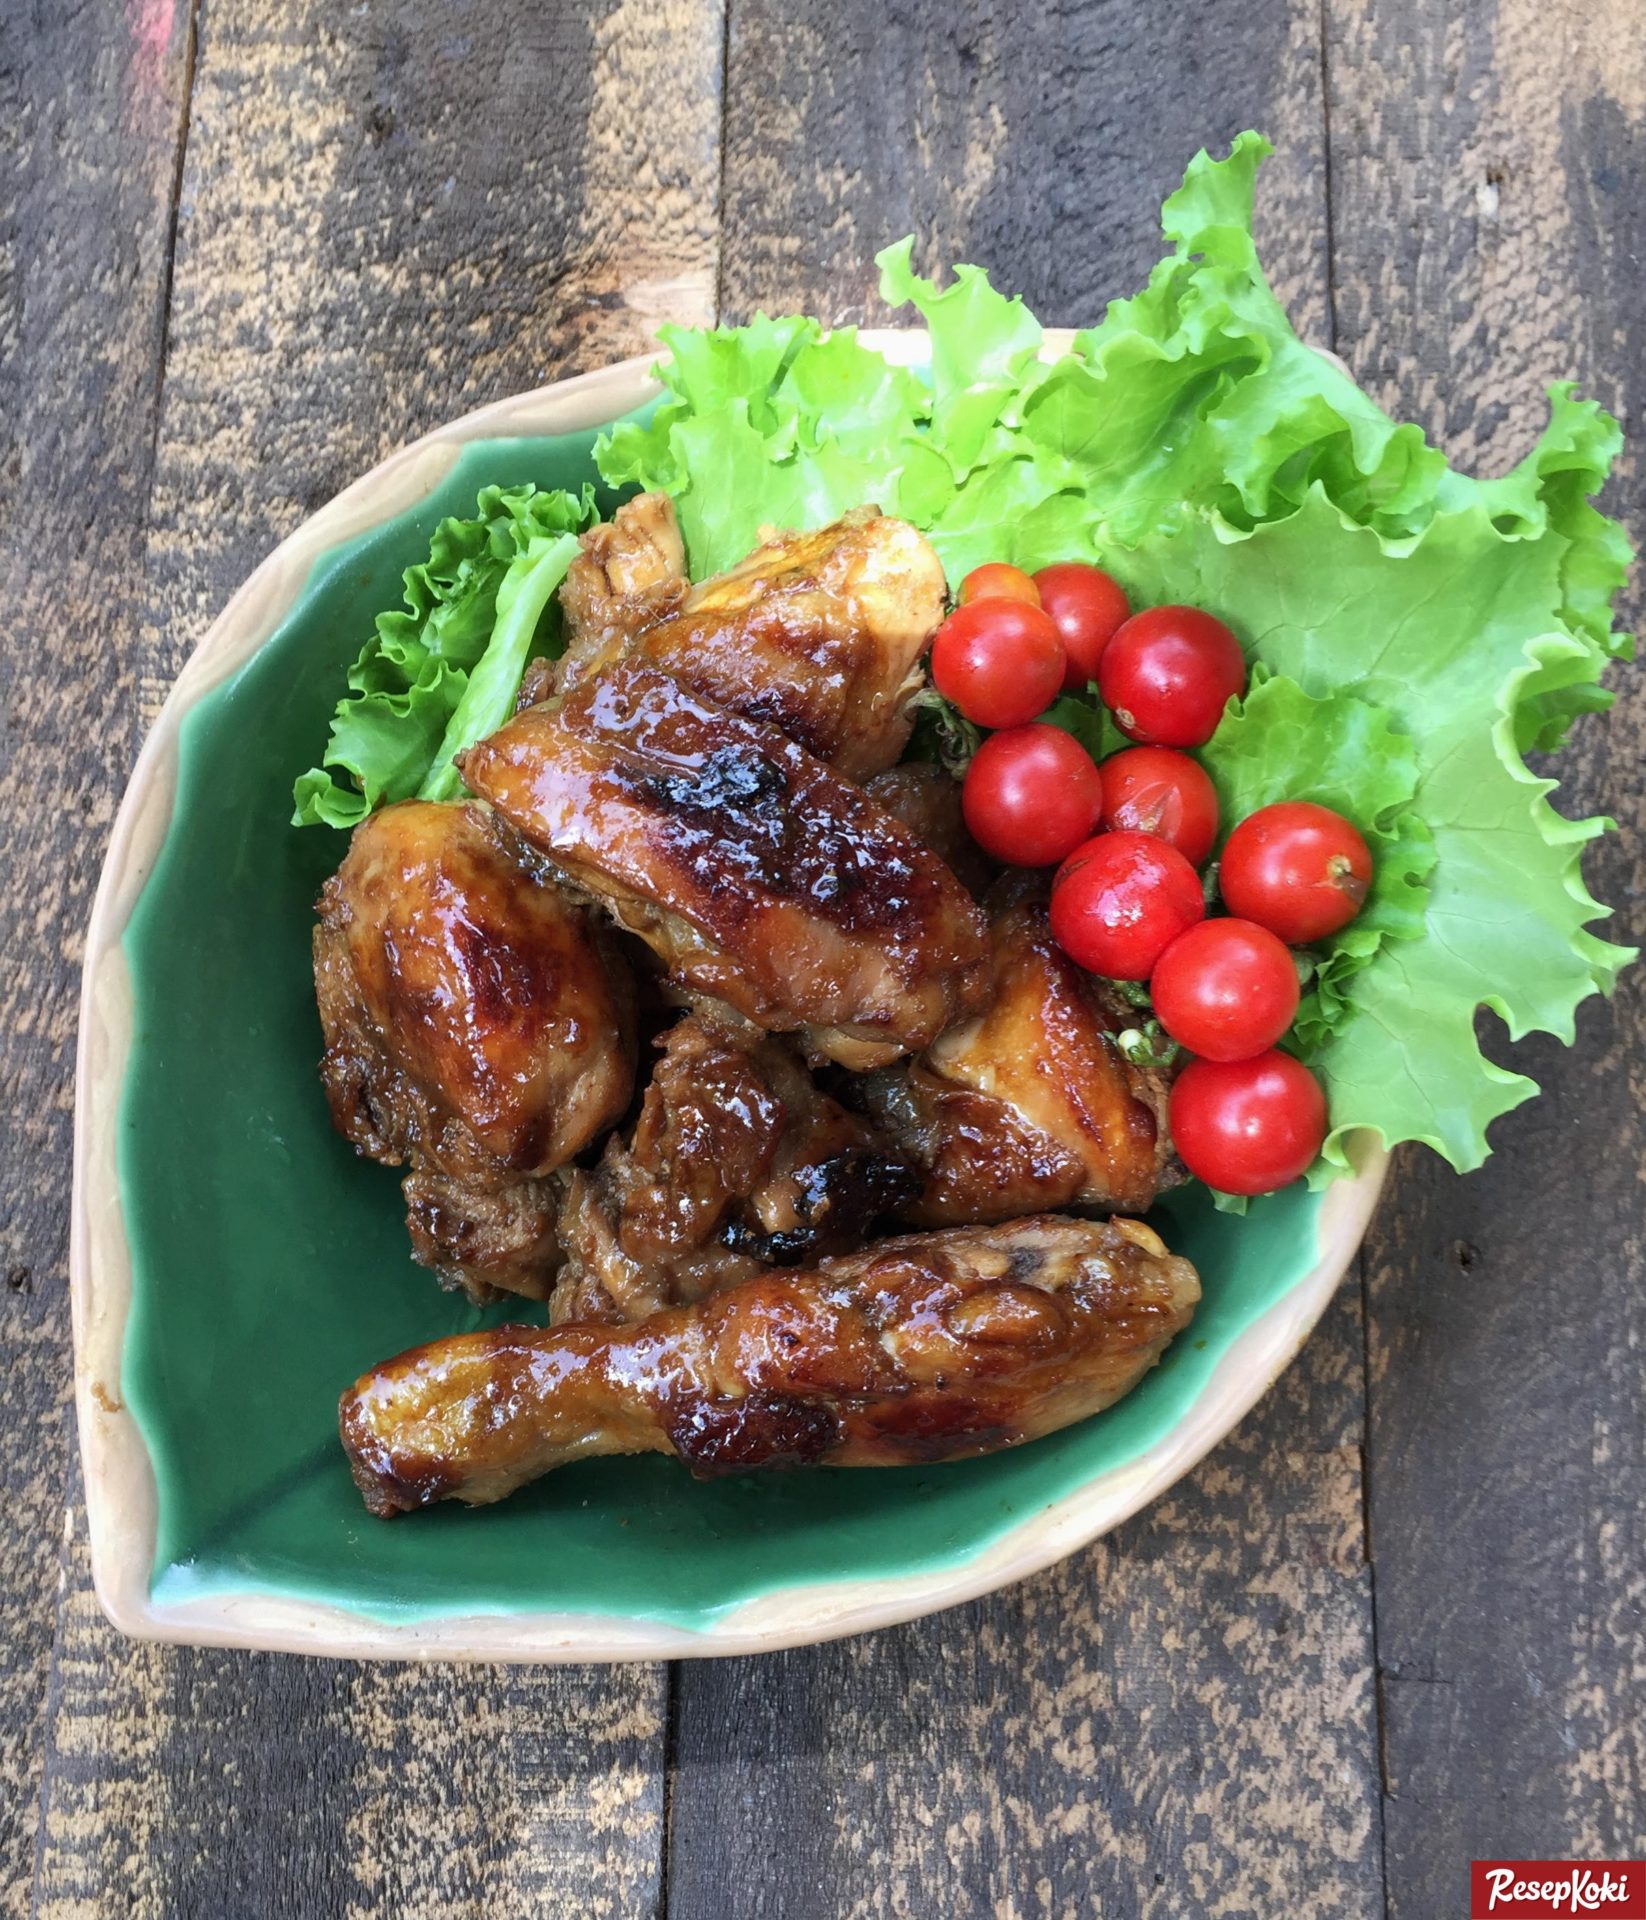  Ayam  Bakar  Madu  Spesial Legit Resep  ResepKoki